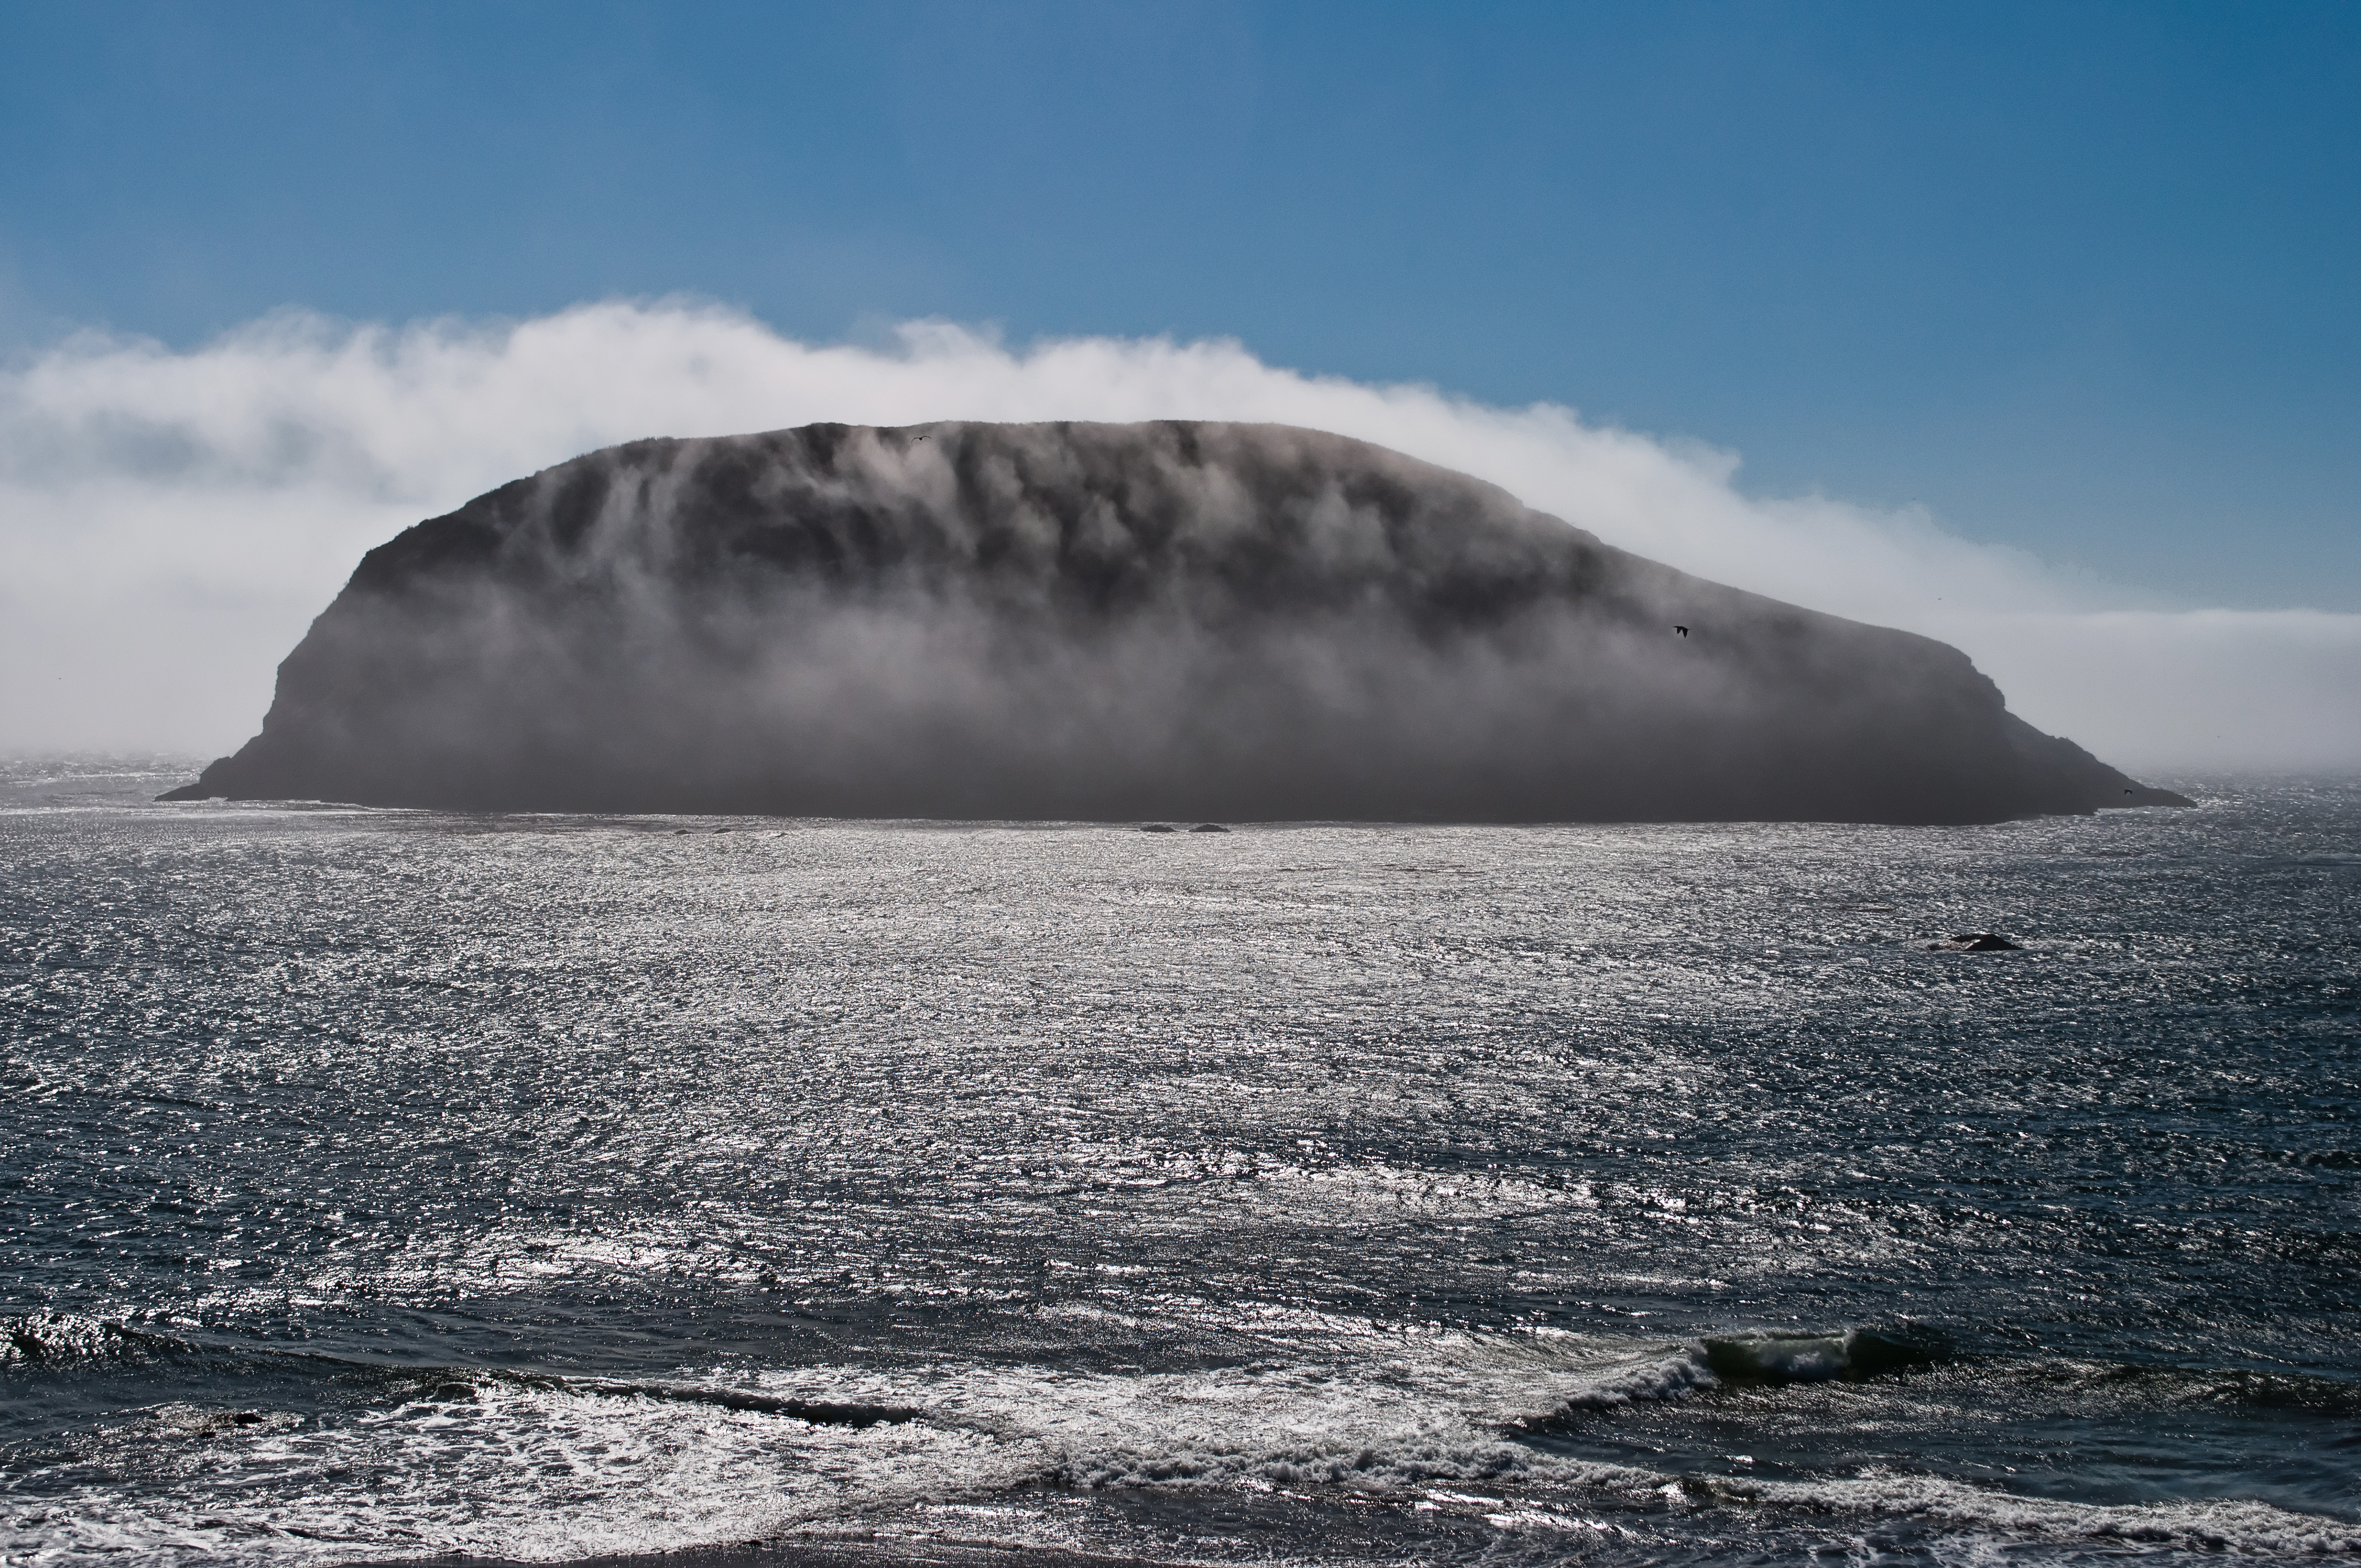 Fog over the island